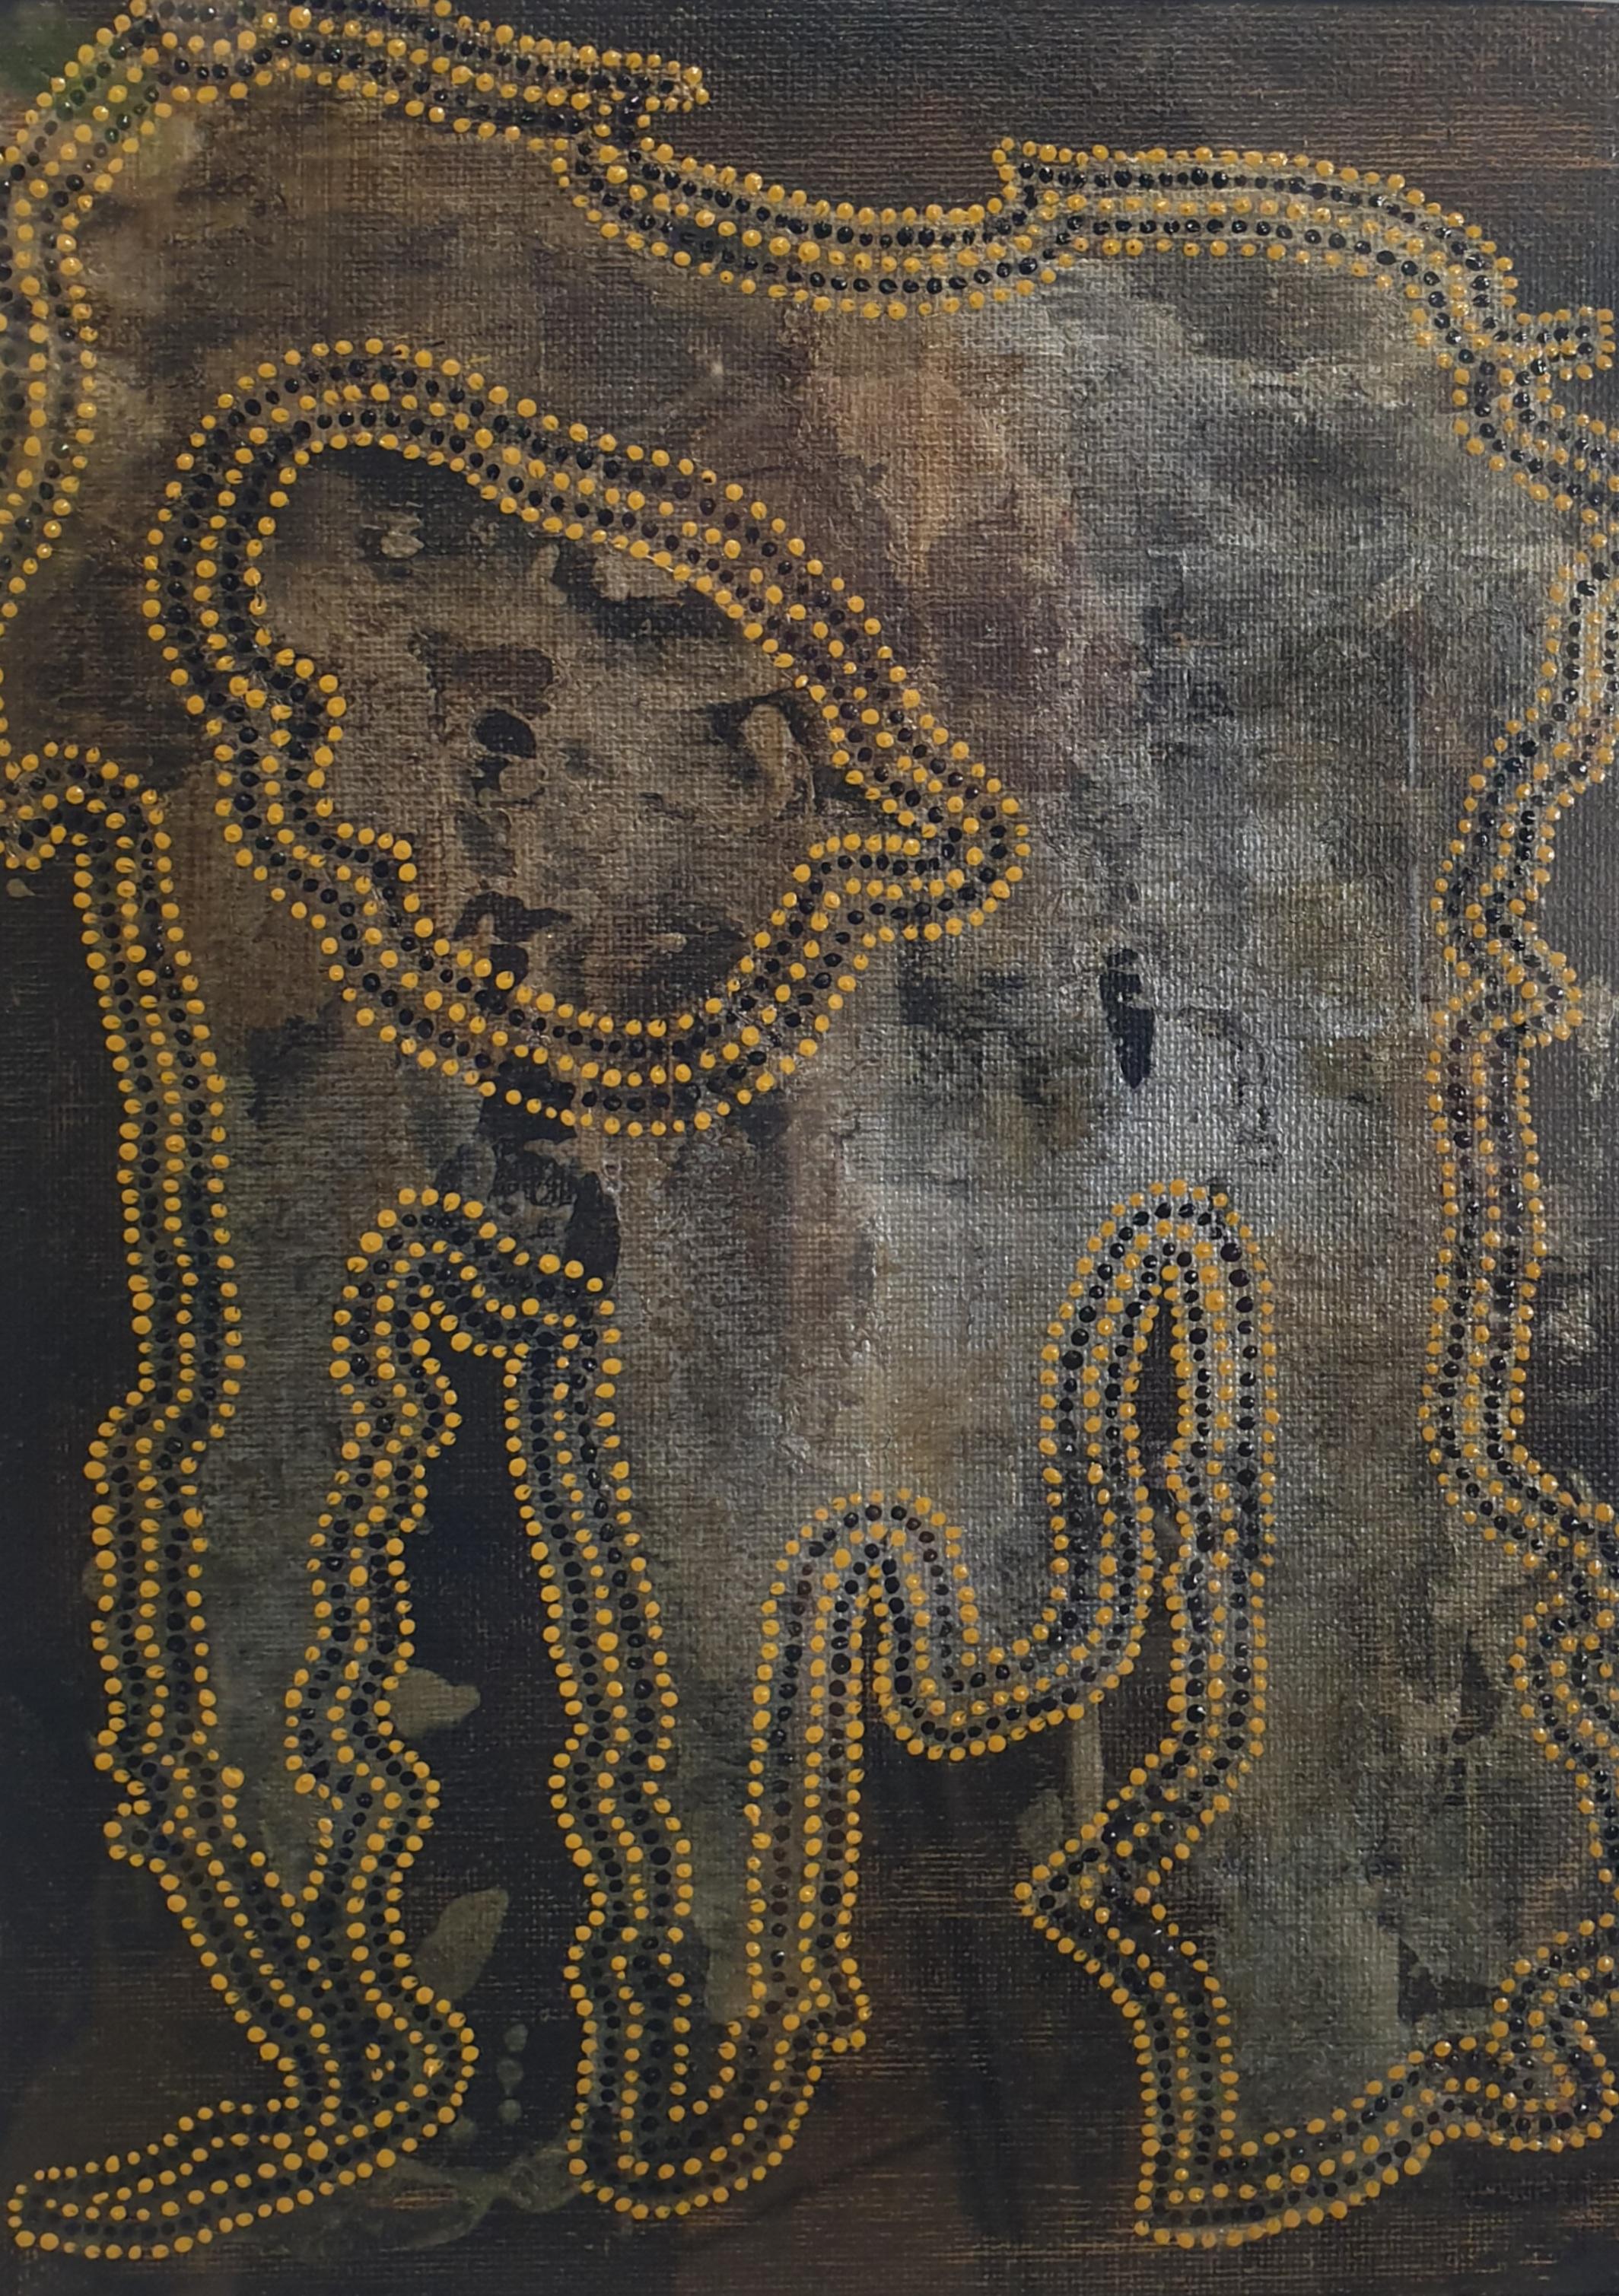 Zeitgenössisch von der Aborigine inspirierte abstrakte Skulptur.